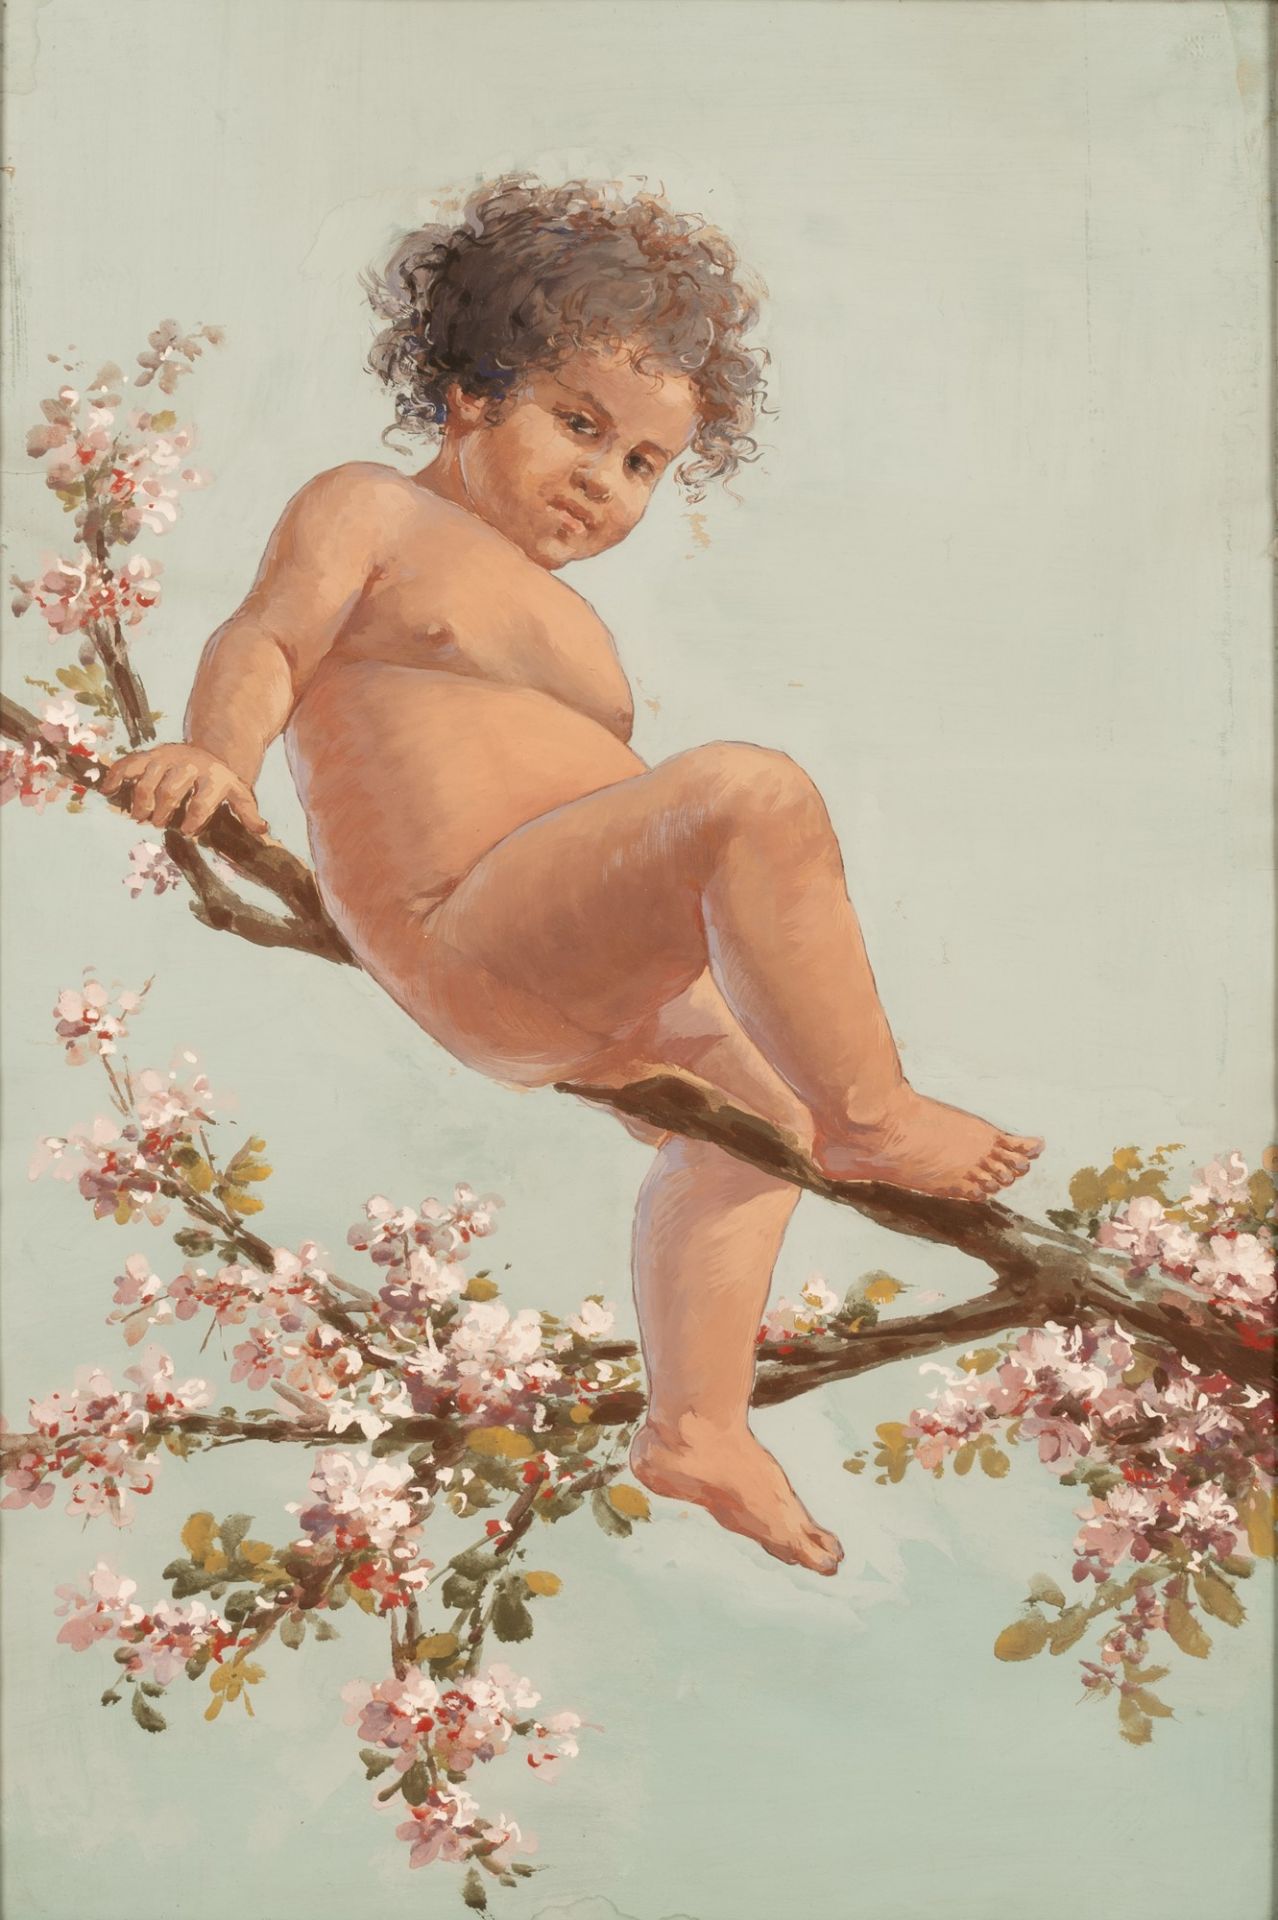 Bambino nudo su mandorlo in fiore - Image 2 of 6